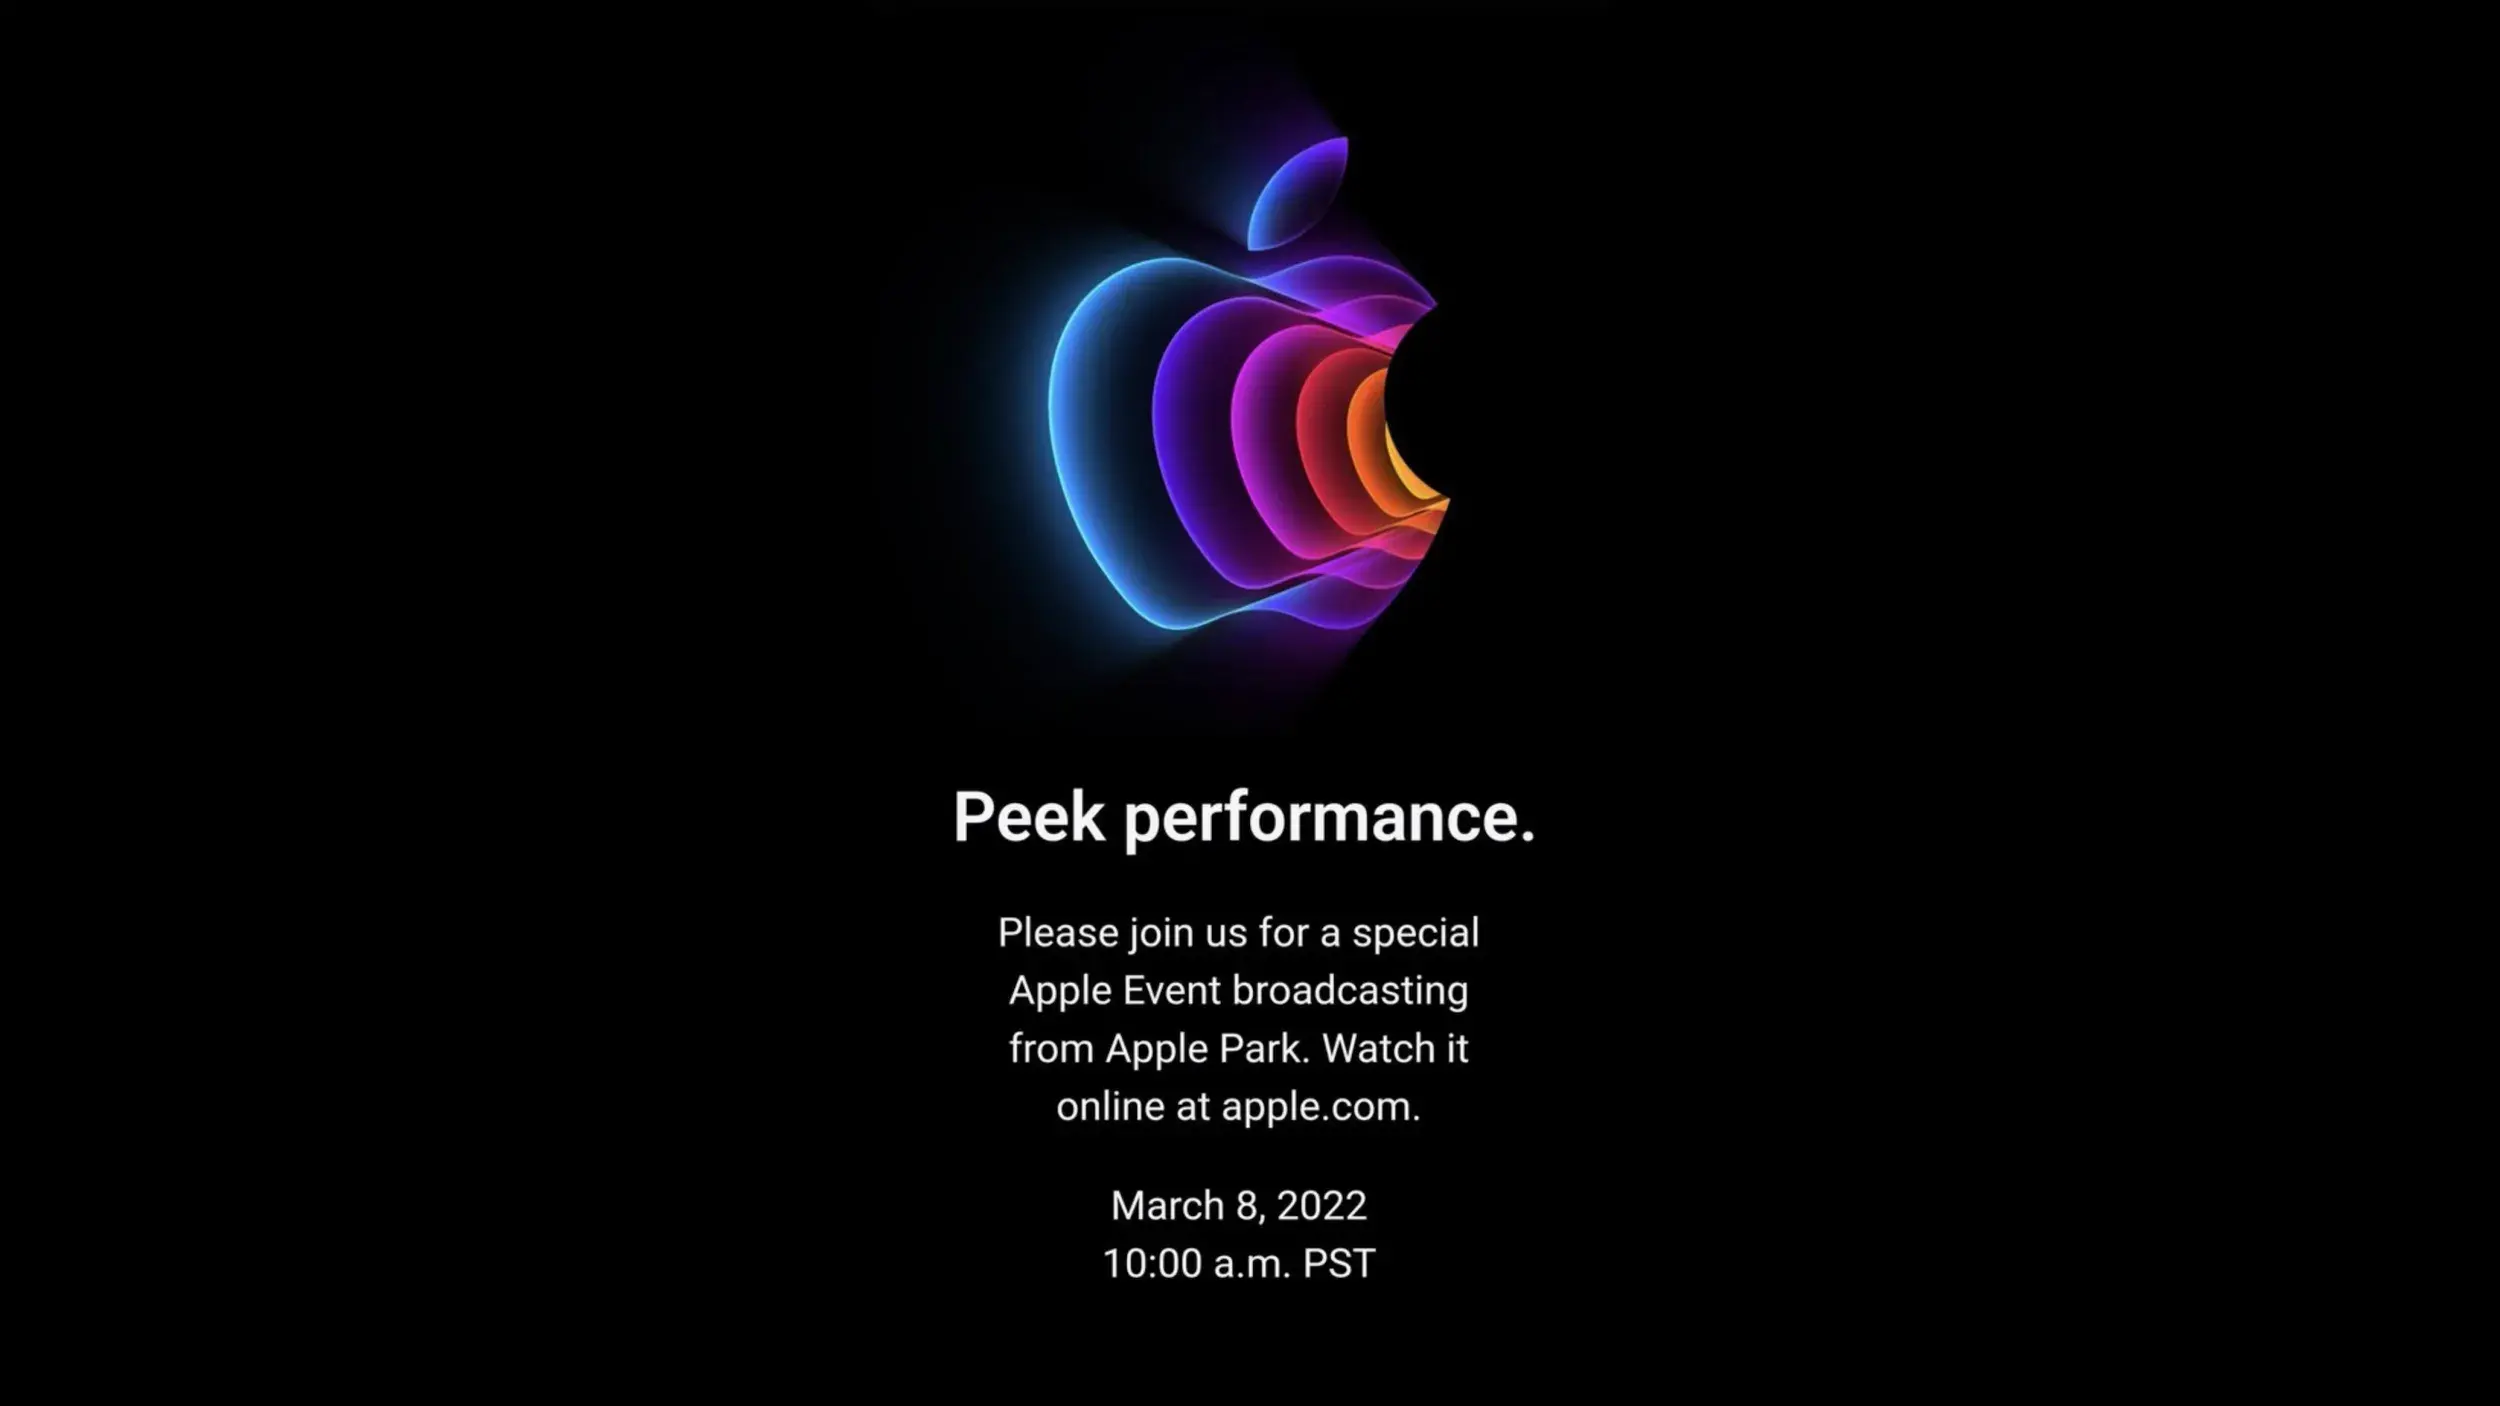 Varbūt vajadzēja saglabāt pēdējā Apple pasākuma logotipu 2022. gada septembrī?  - iPhone 14 kļūs par iPhone 13S: Stīva Džobsa šedevrs ir sasniedzis maksimumu, bet Apple ražo Max.